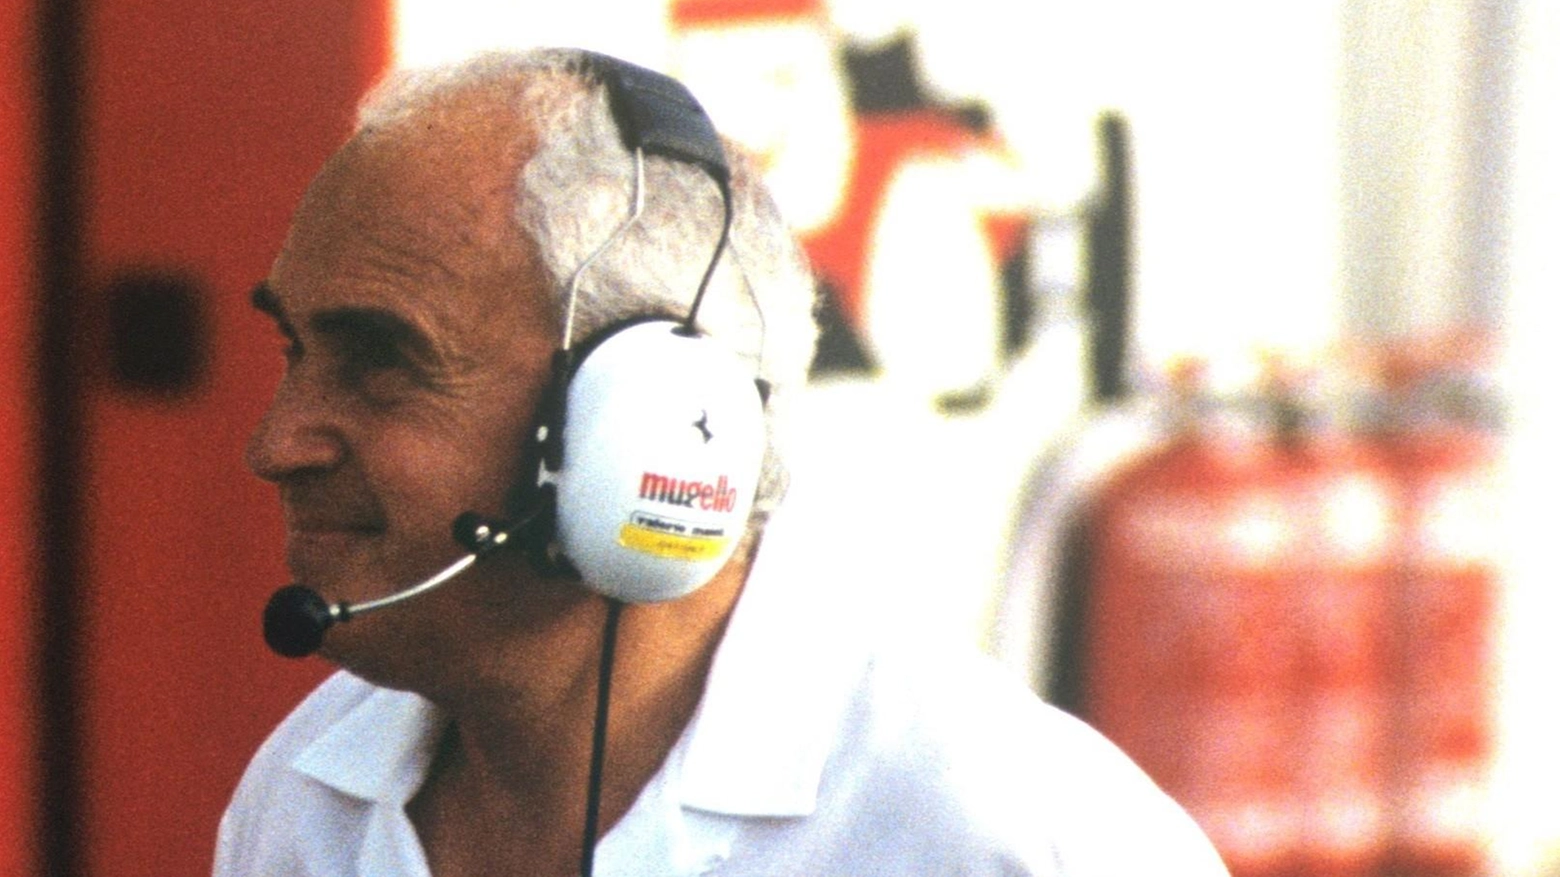 Remo Cattini, primo direttore del Mugello, è ricordato con affetto nel mondo del motorsport a tre anni dalla sua scomparsa. La sua figura è stata fondamentale nella storia dell'autodromo, amato dai piloti e dalla Ferrari.